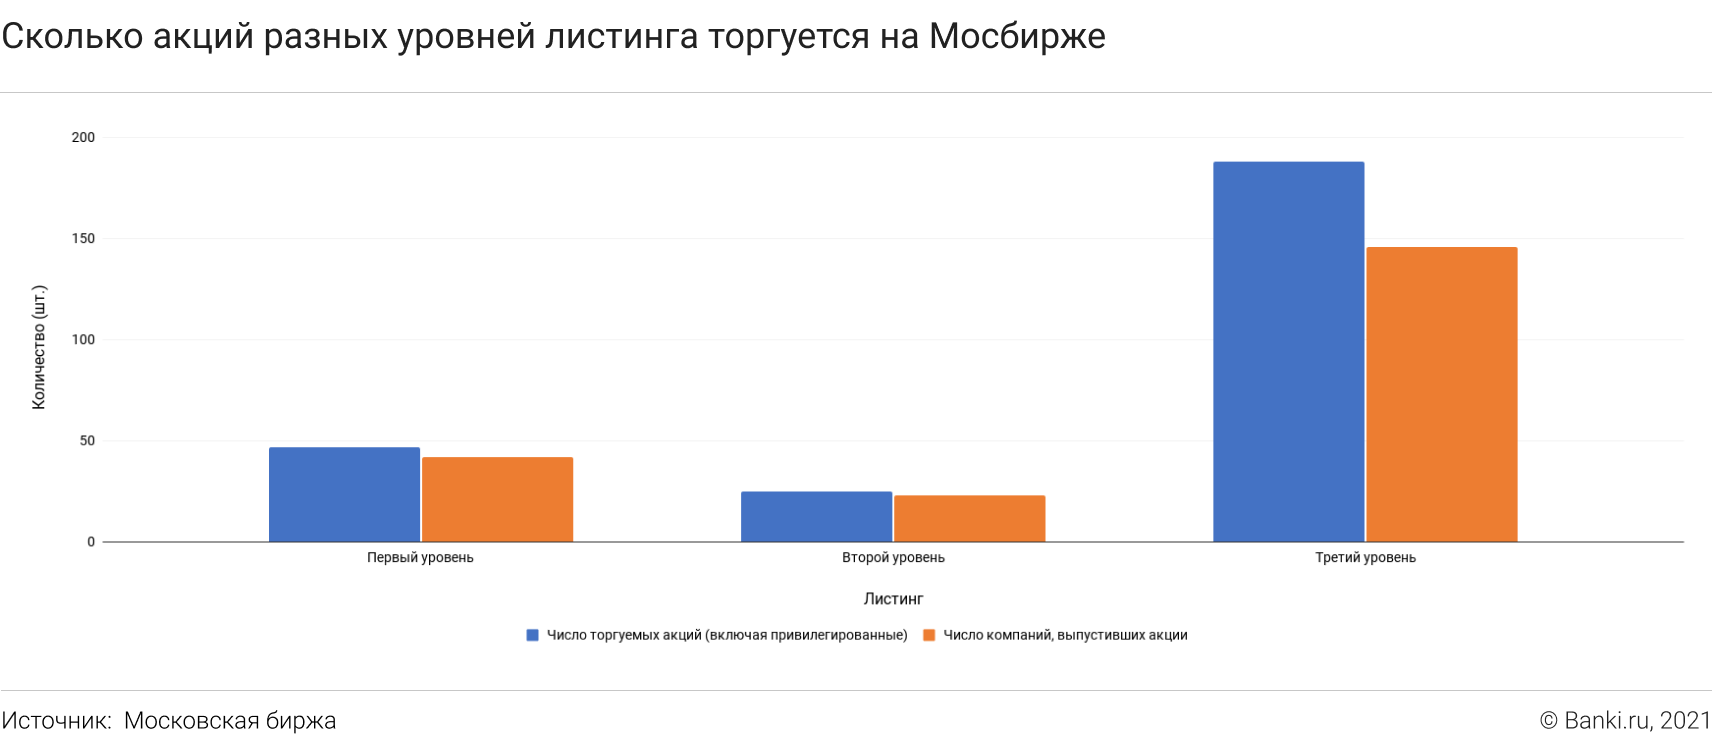 Акции, не включенные в котировальные списки 09.12.2021 | Банки.ру